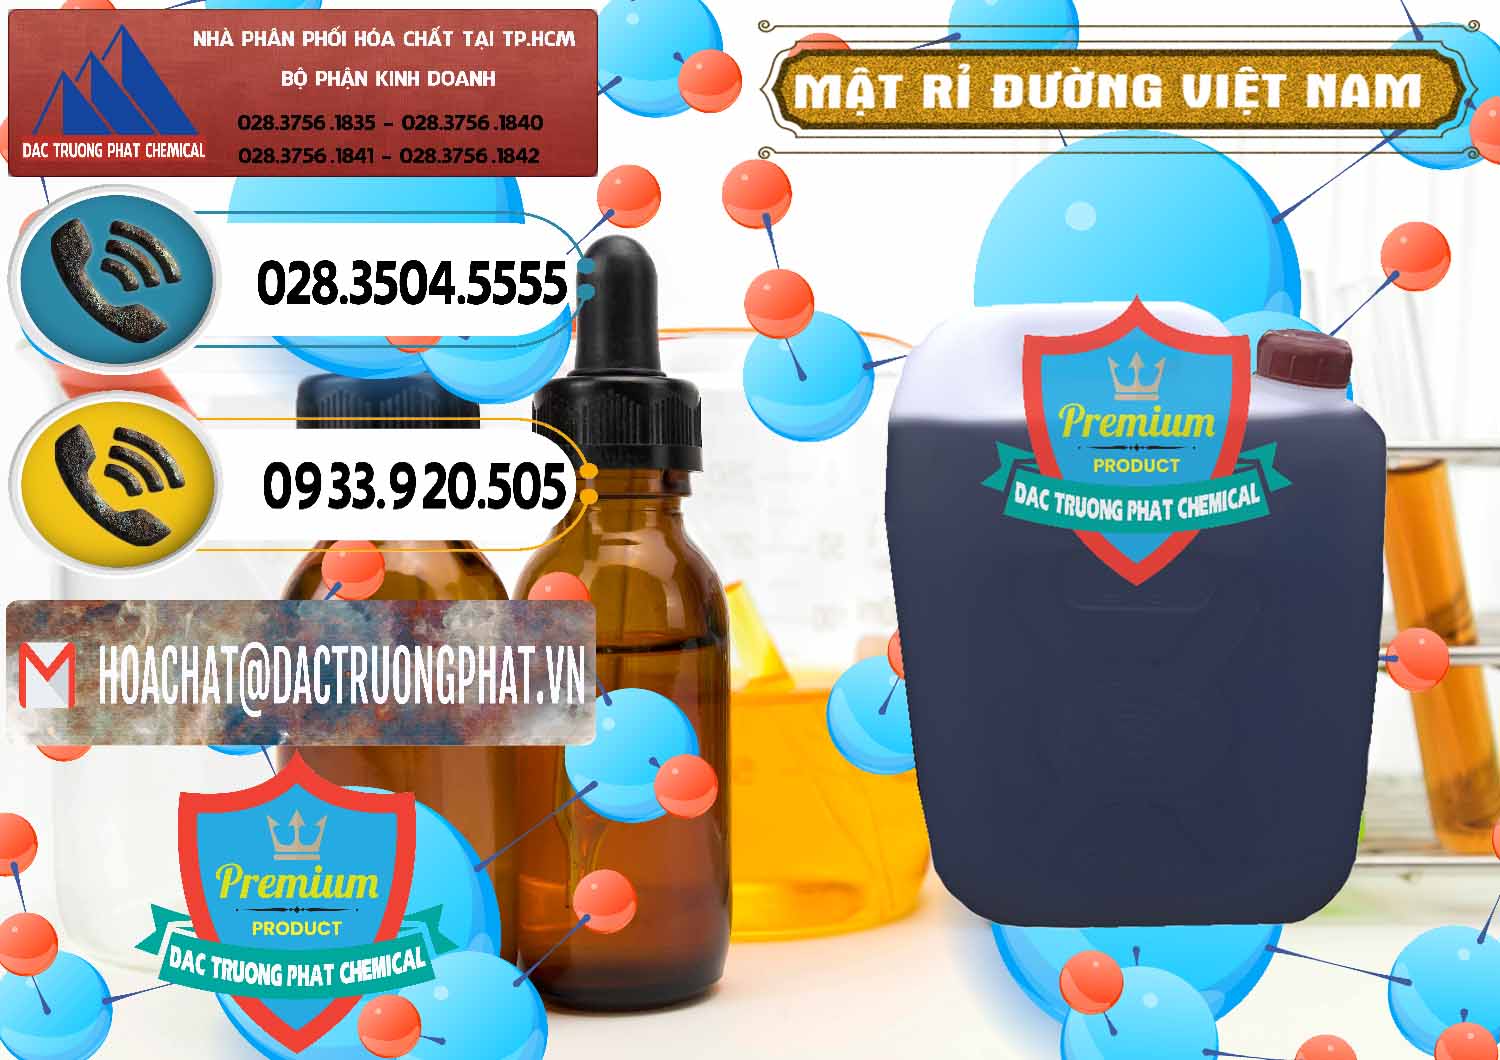 Chuyên phân phối - cung cấp Mật Rỉ Đường Việt Nam - 0306 - Cty cung cấp - bán hóa chất tại TP.HCM - hoachatdetnhuom.vn